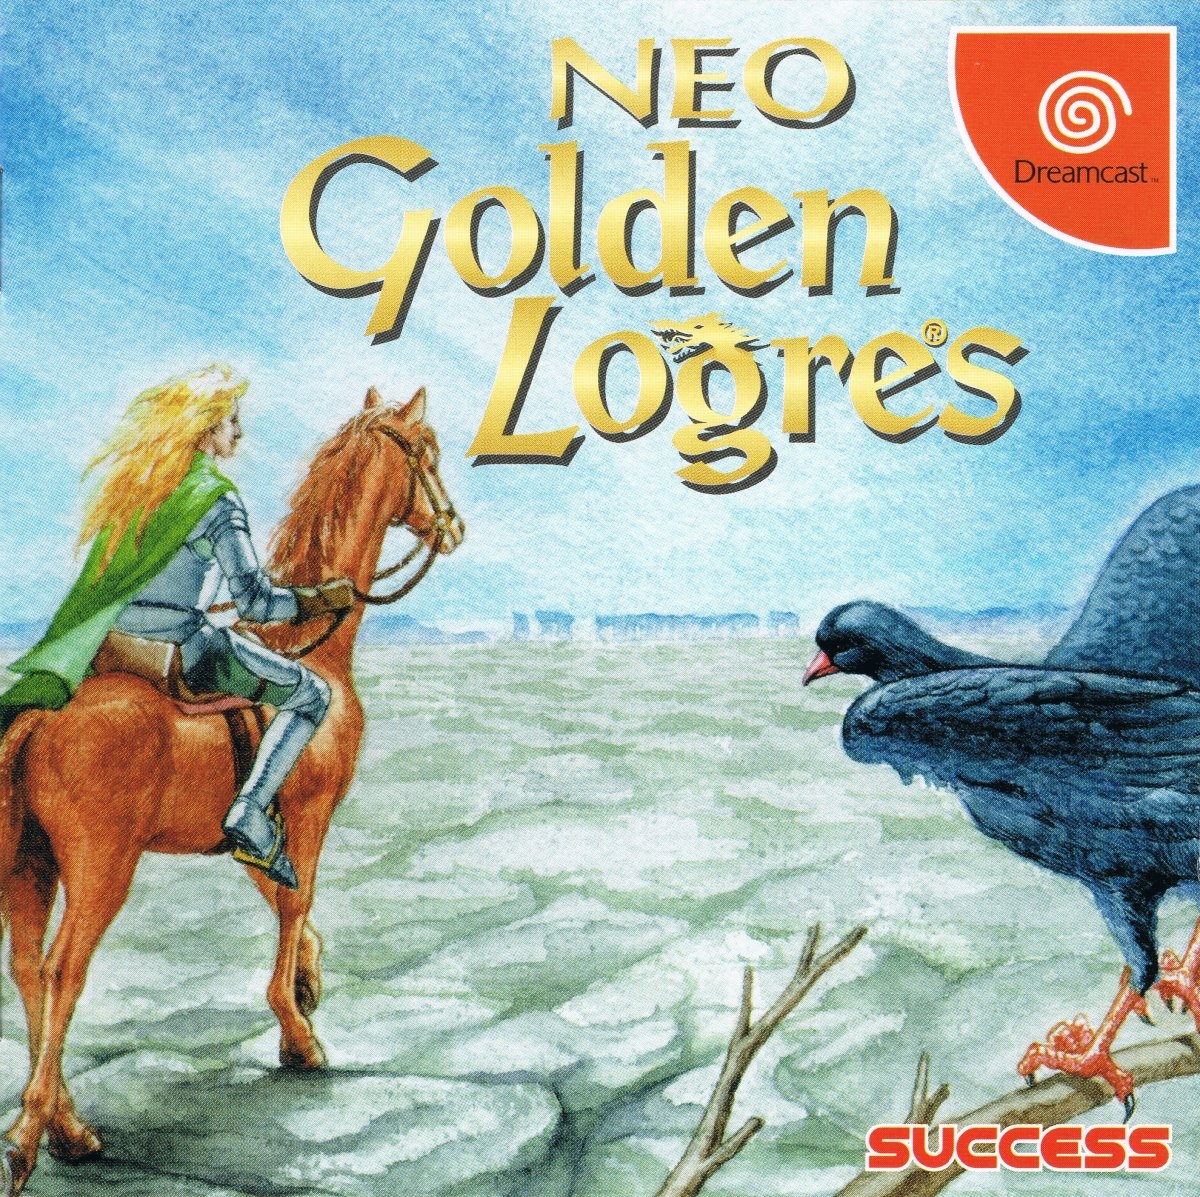 Neo Golden Logres cover